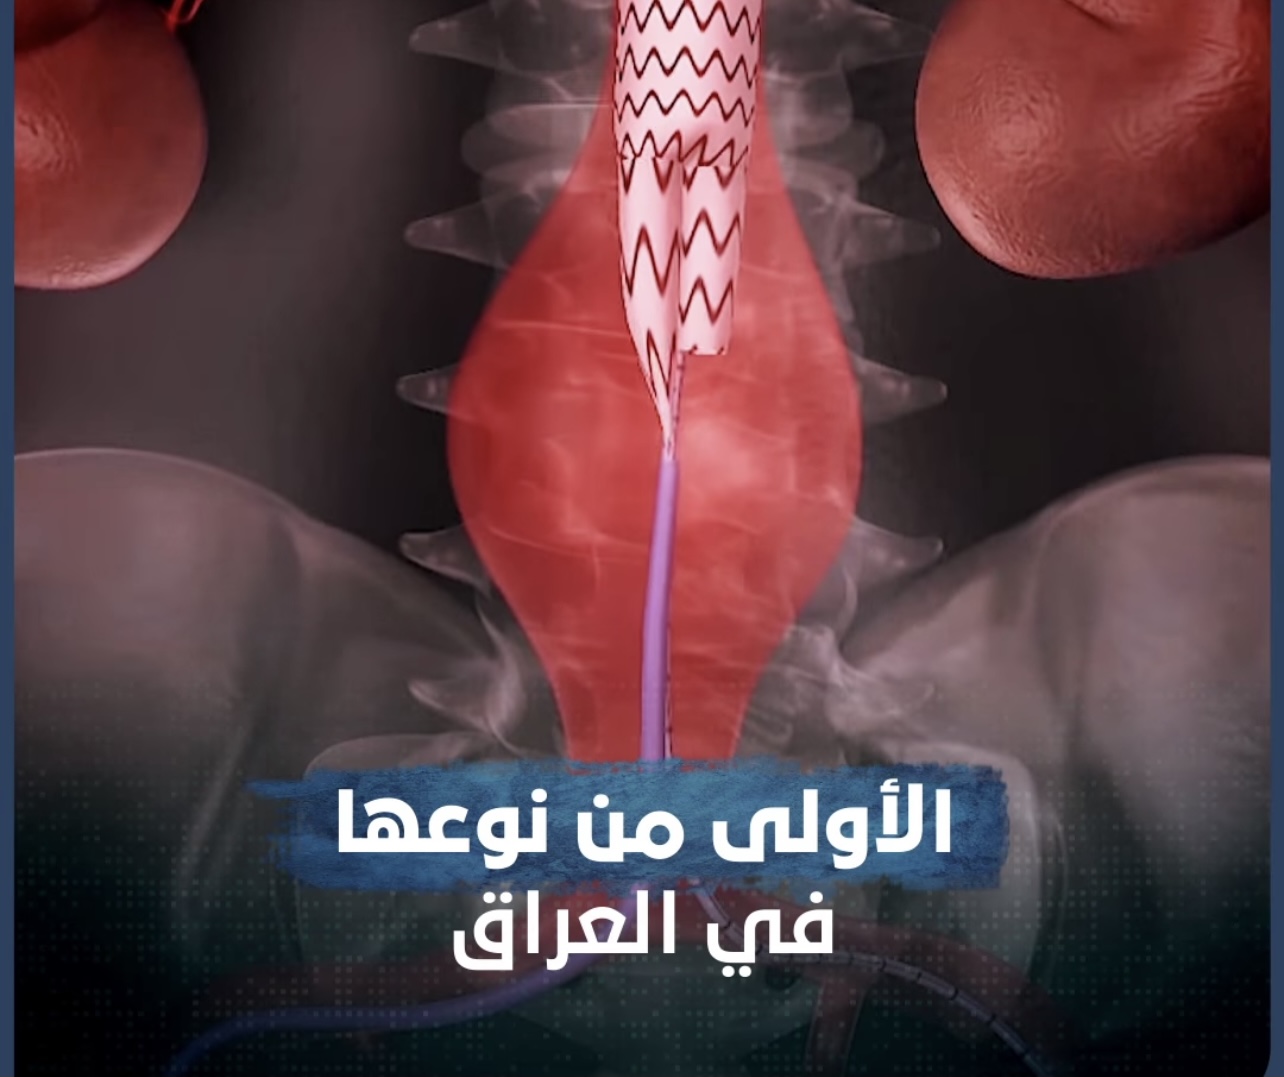 نجاح أطباء عراقيون باستخدام تقنية جديدة لمعالجة مرض “أم الدم”